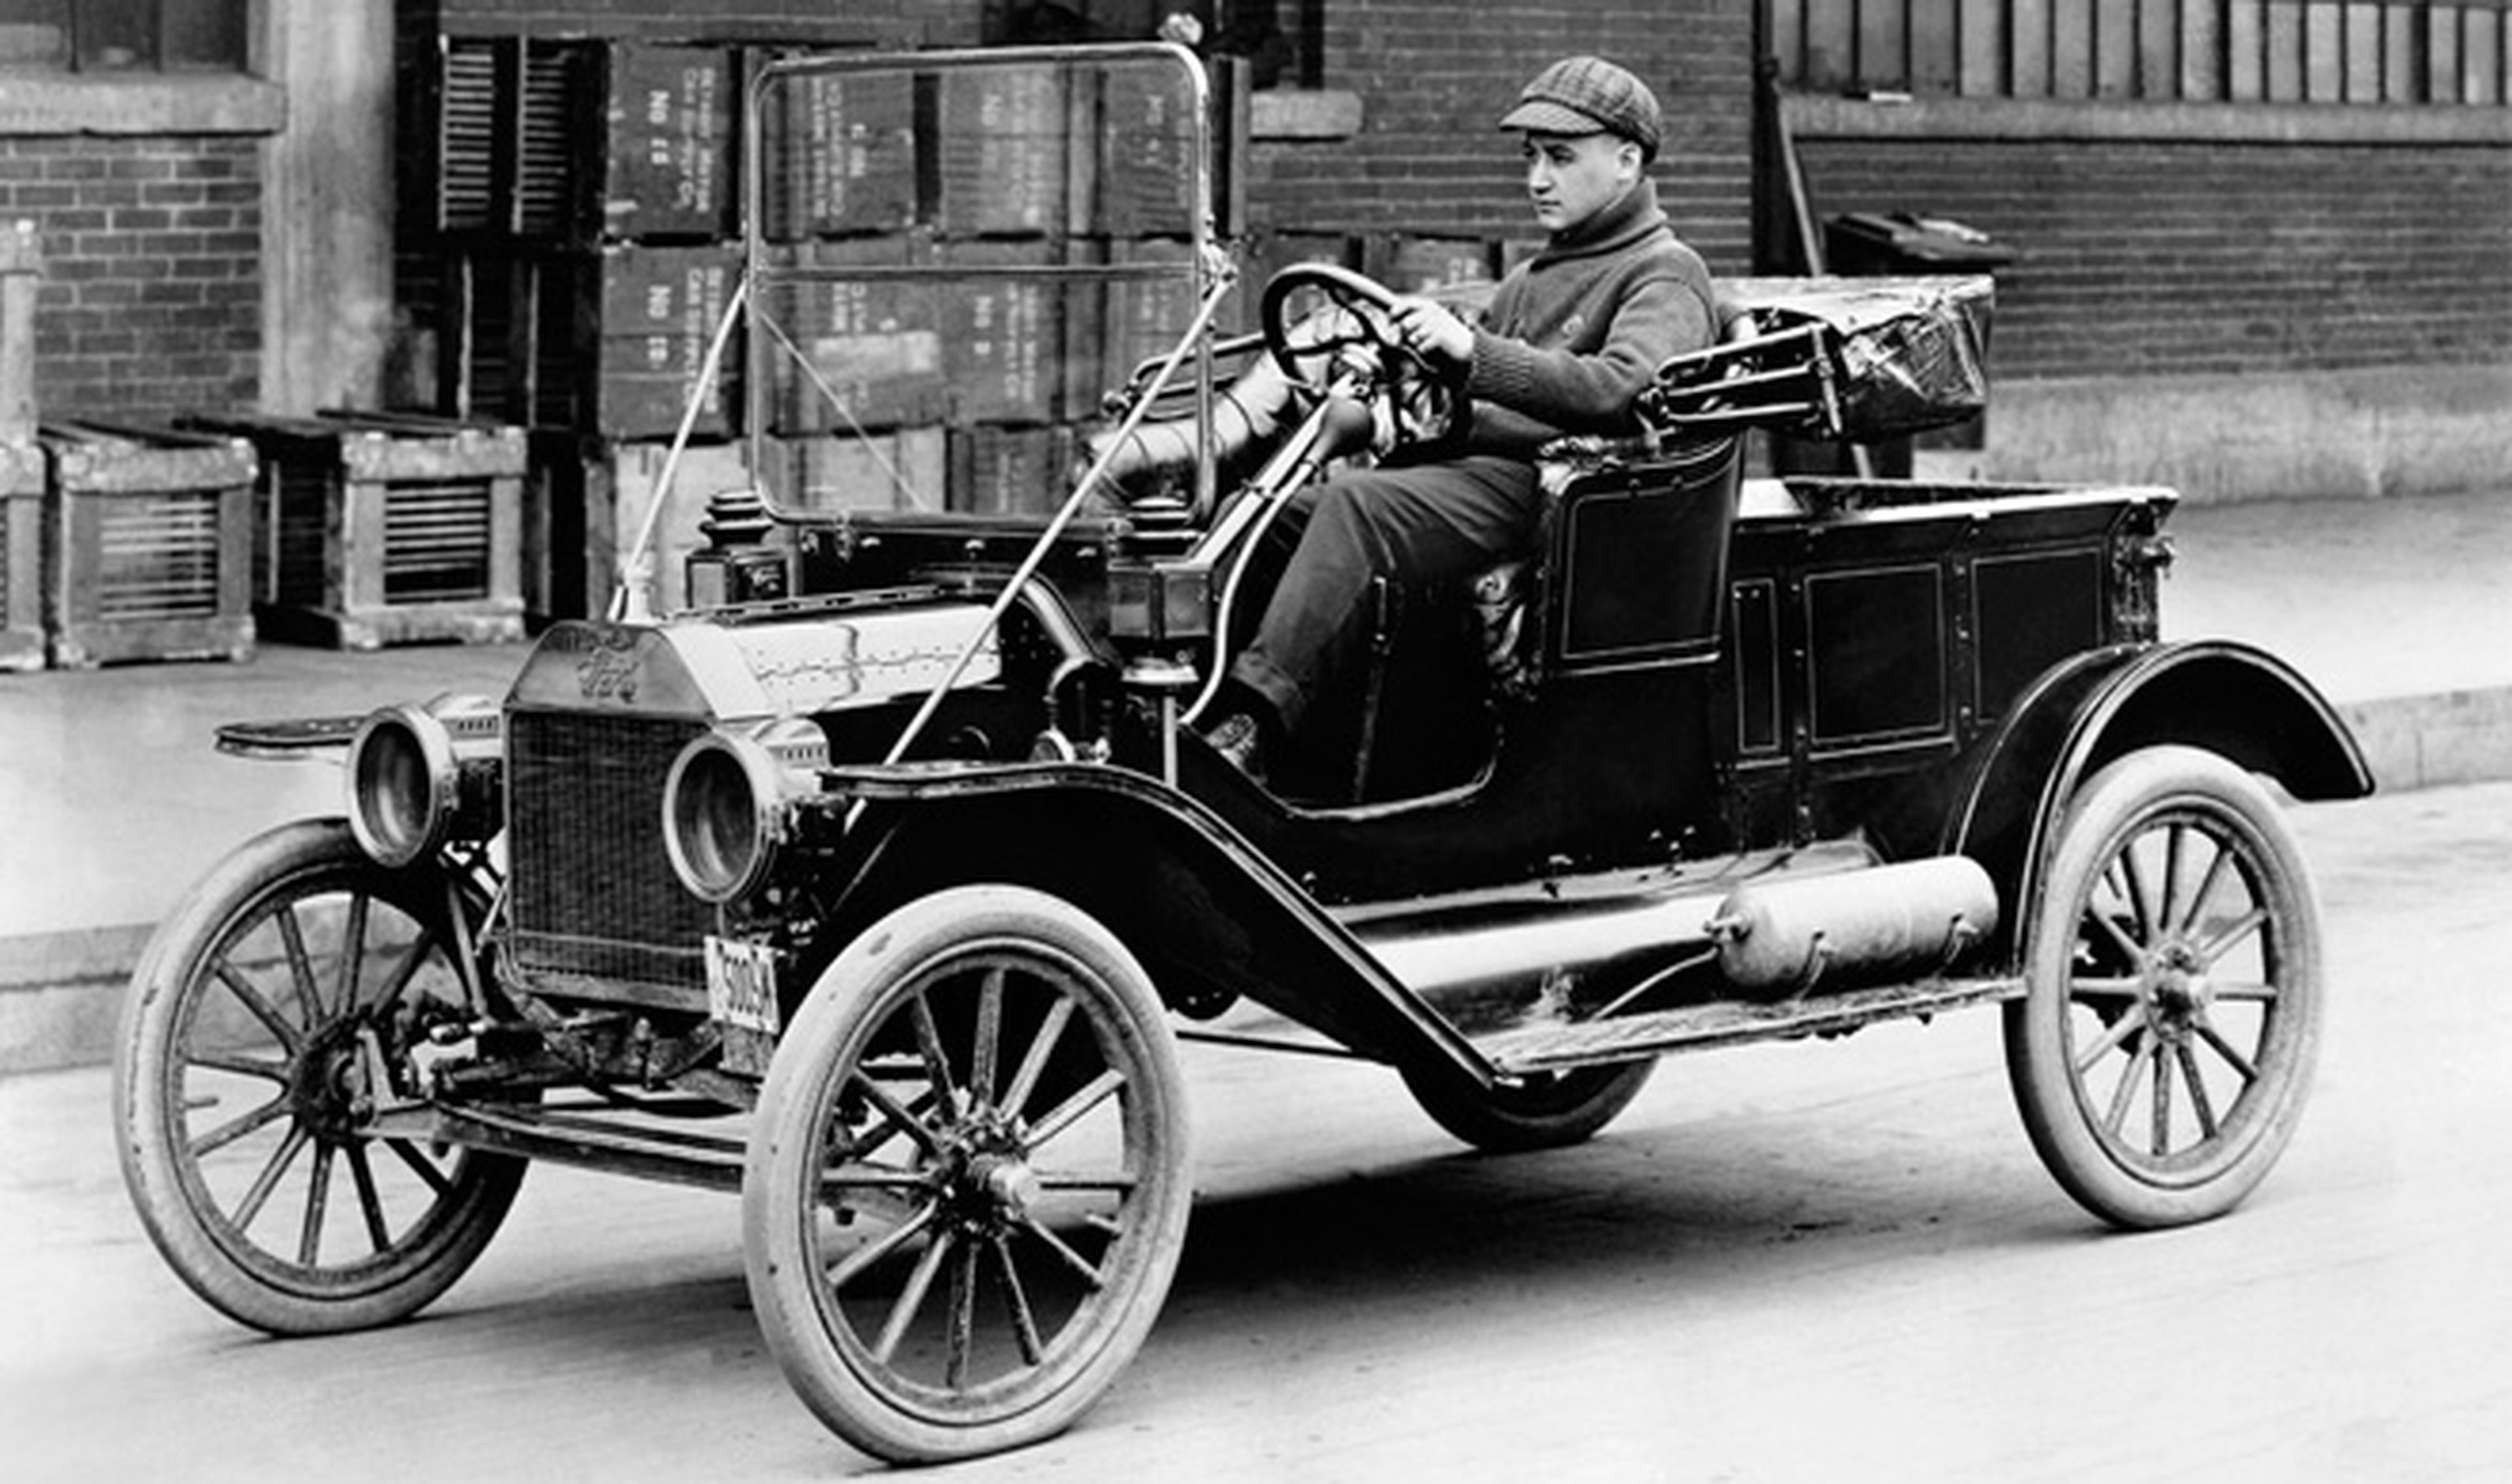 Hace 100 años se produjo la unidad 1 millón del Ford T